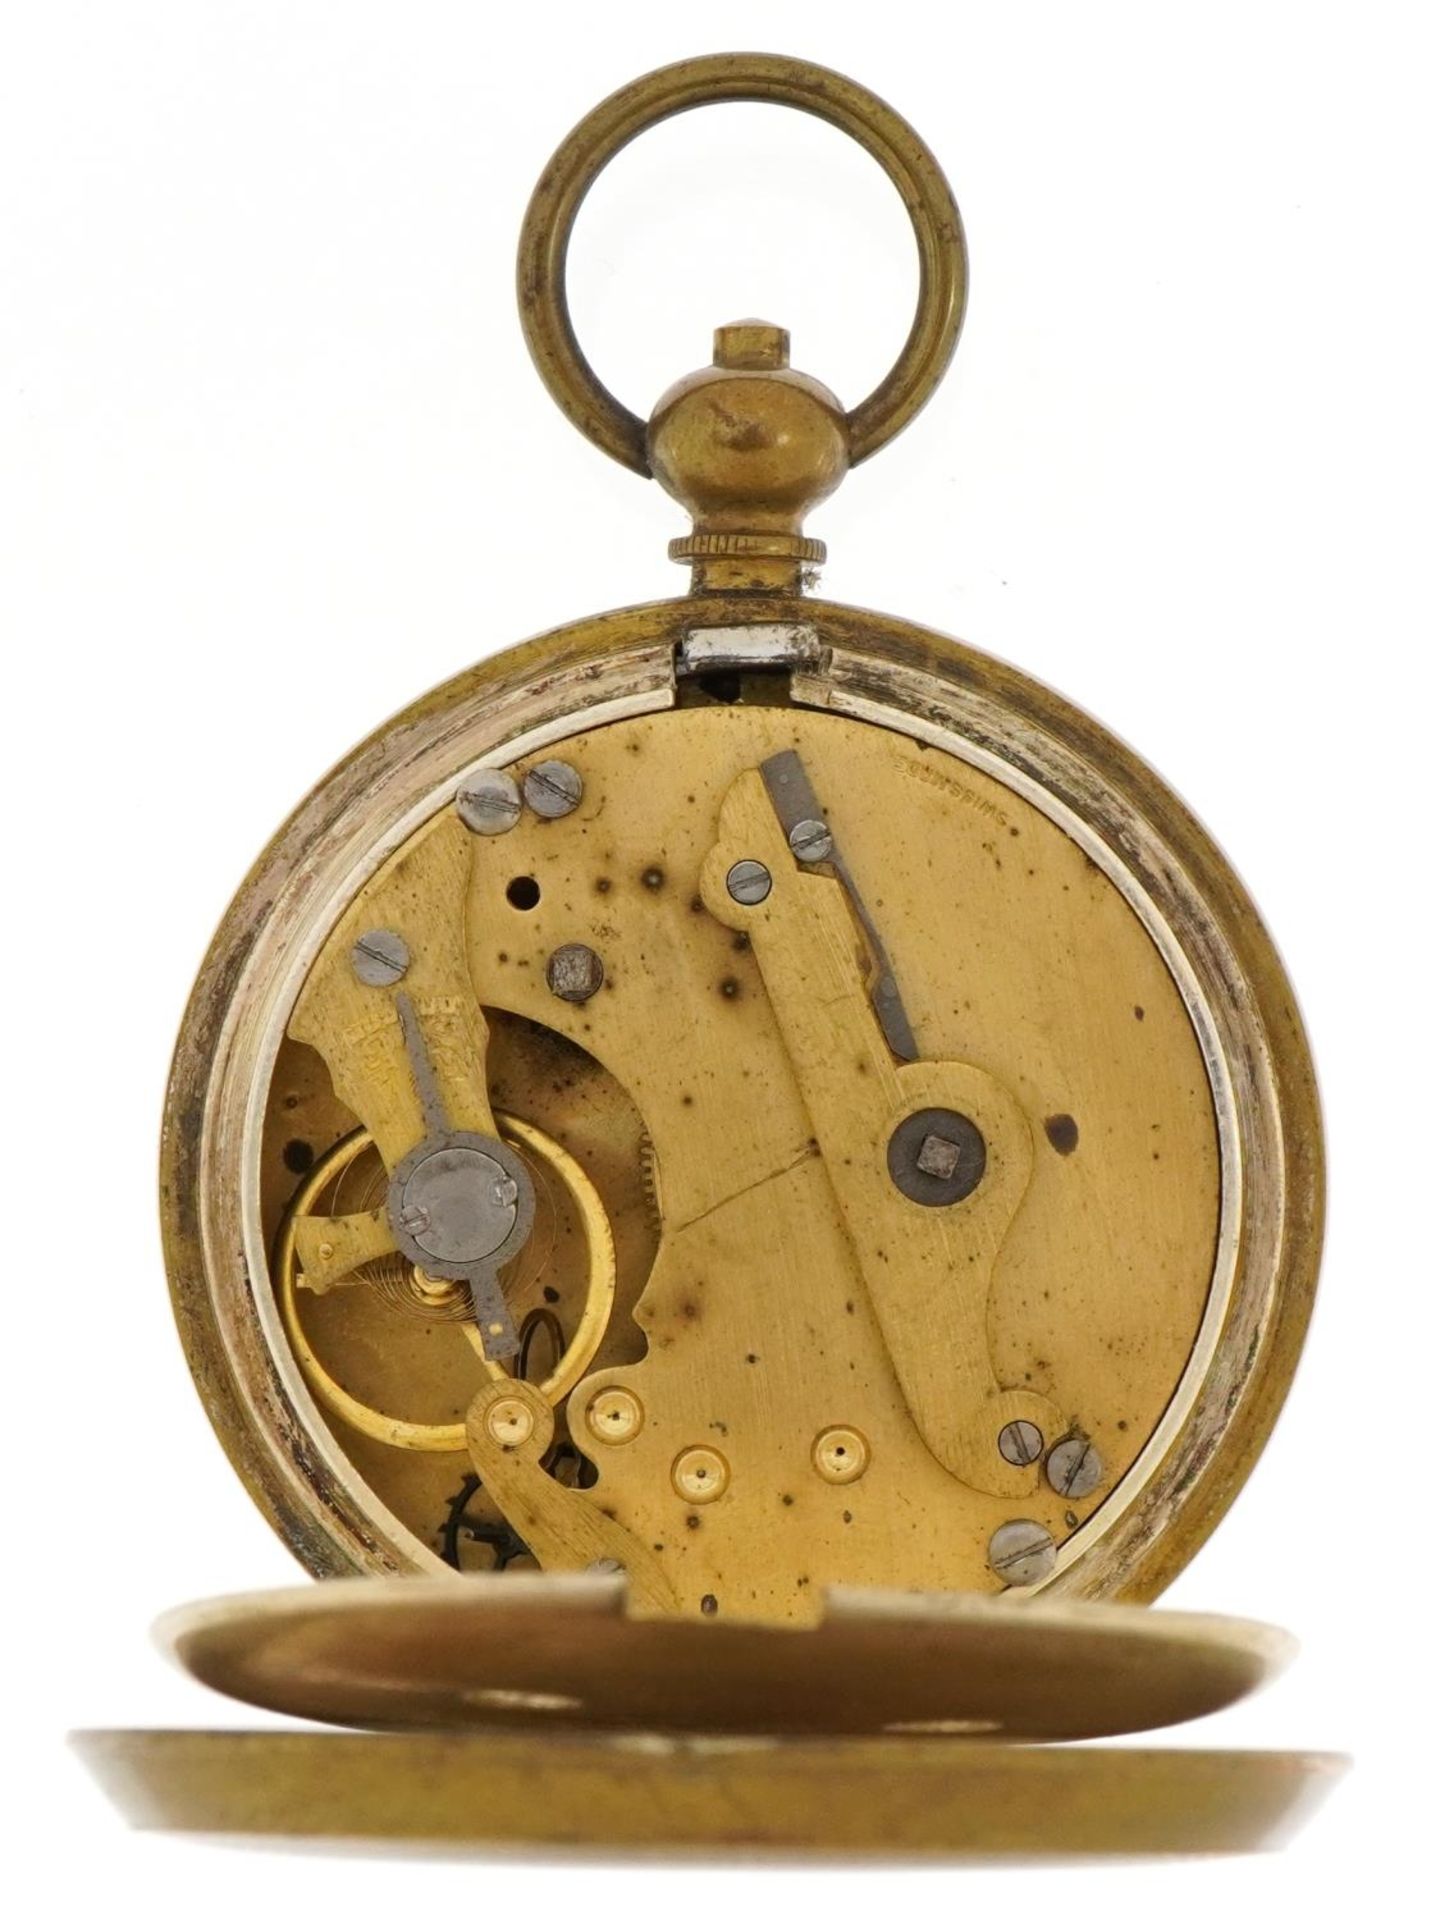 Gentlemen's Superior Railway Timekeeper open face pocket watch with enamelled dial, 53mm in diameter - Image 3 of 3